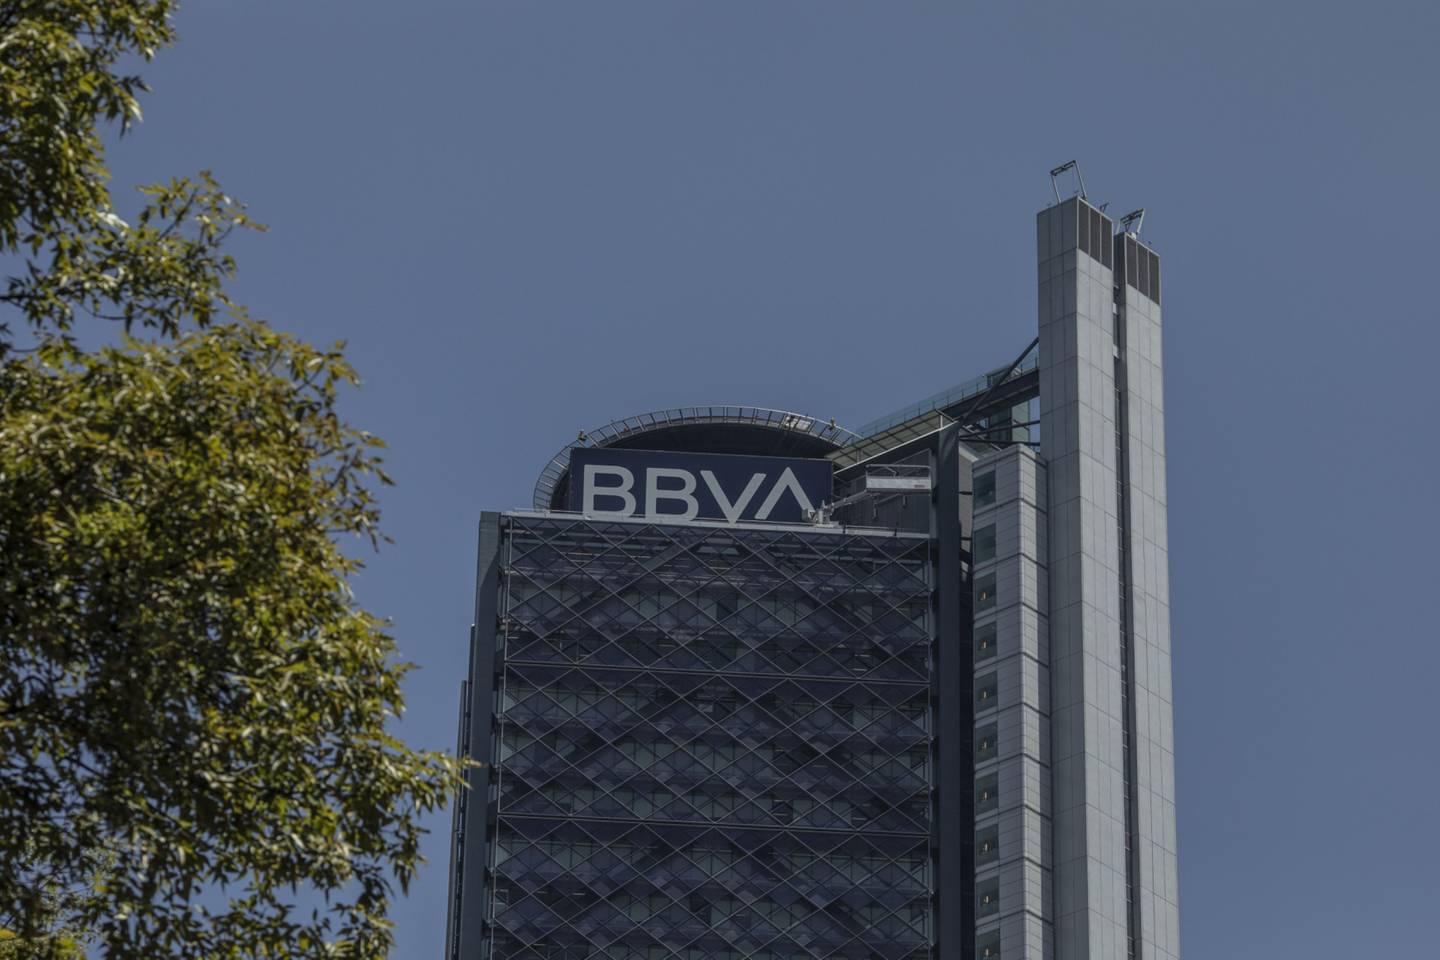 Braço de banco corporativo e de investimento tem hoje aproximadamente 3.800 funcionários espalhados por escritórios em diversas localizações (Foto: Alejandro Cegarra/Bloomberg)dfd